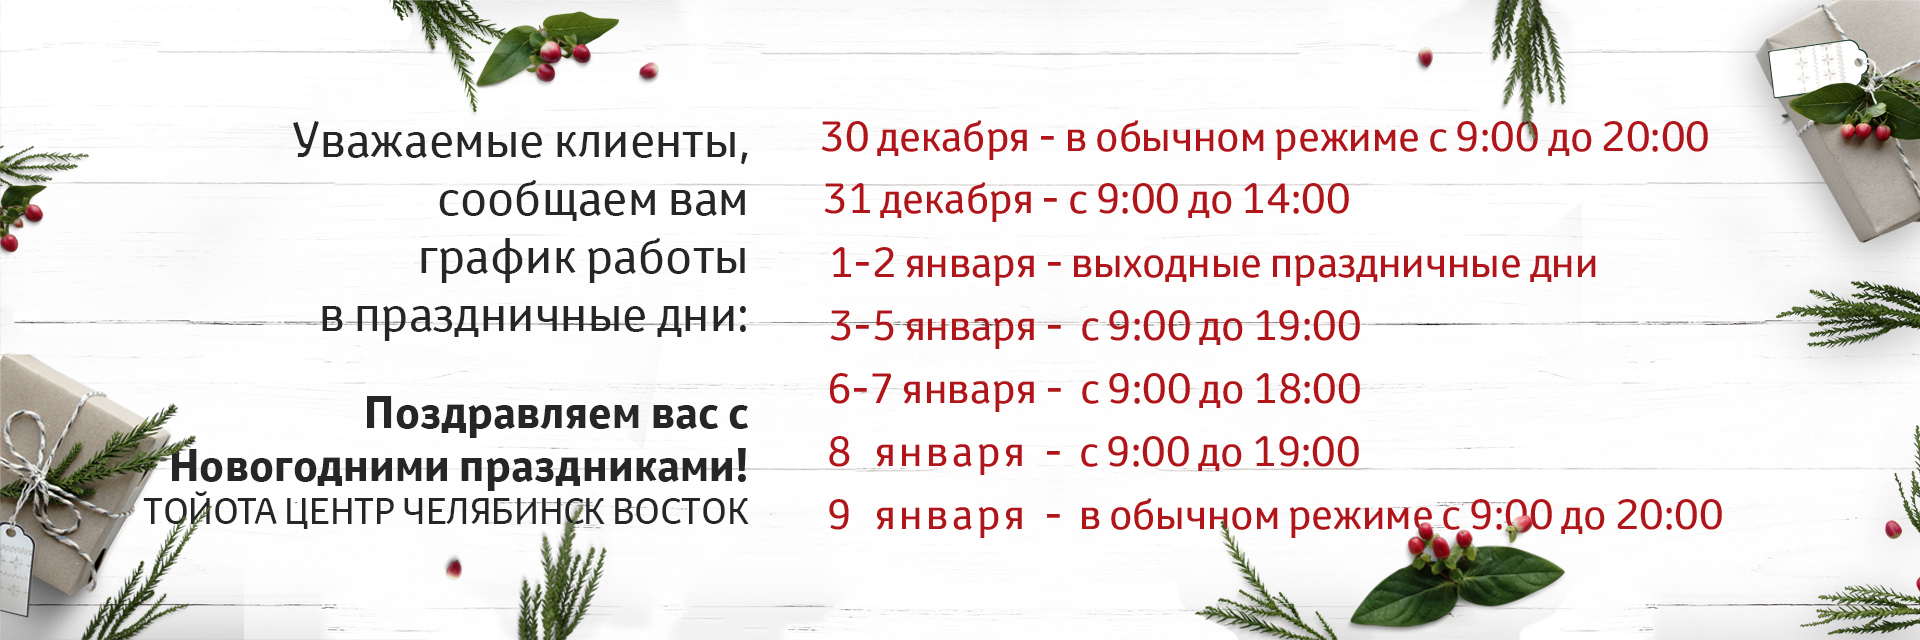 Работает ли вб 23 февраля. Режим работы автоцентра на новогодние праздники. Работают ли автосалоны 31 декабря. Работают ли адвокаты в новогодние праздники Воронеж.